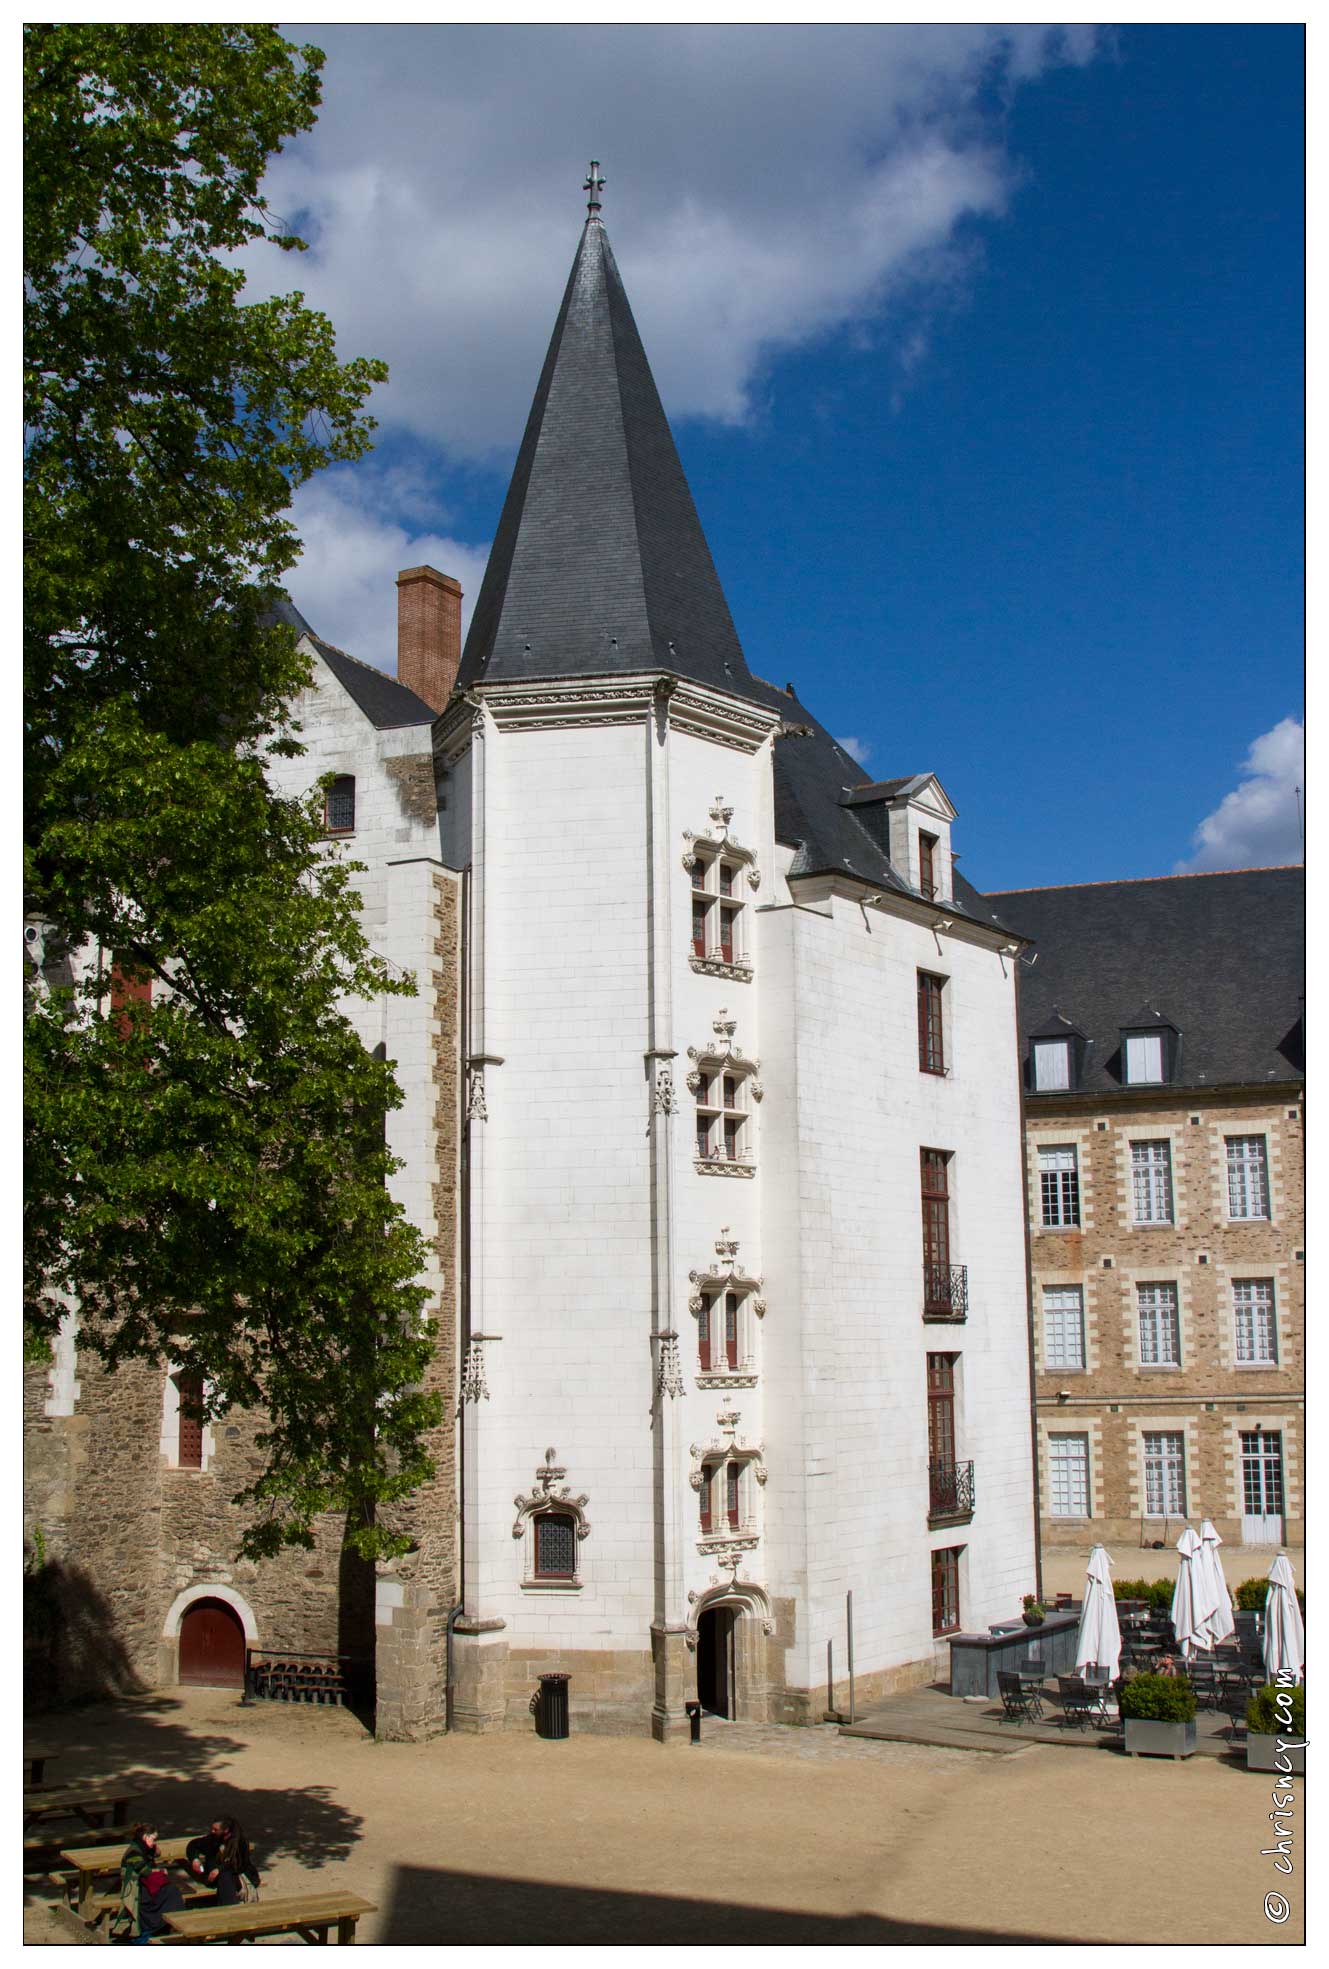 20120516-05_1697-Nantes_Chateau_des_Ducs_de_Bretagne.jpg